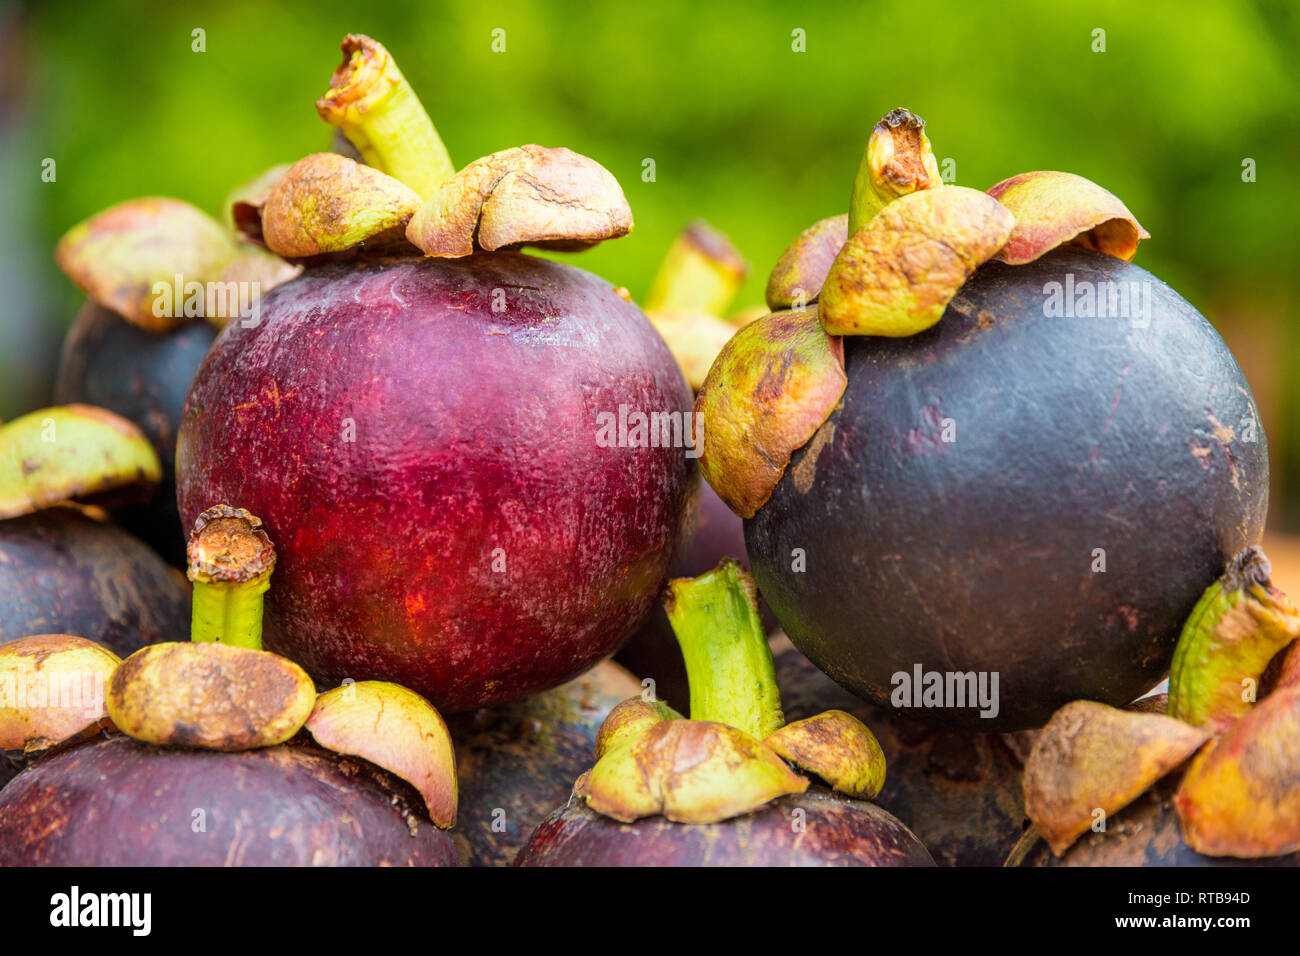 Belle photo d'un pourpre rougeâtre à maturité deux mangoustan (Garcinia mangostana) fruits, empilées les unes sur les autres. Les fruits avec leurs tiges vertes sont... Banque D'Images